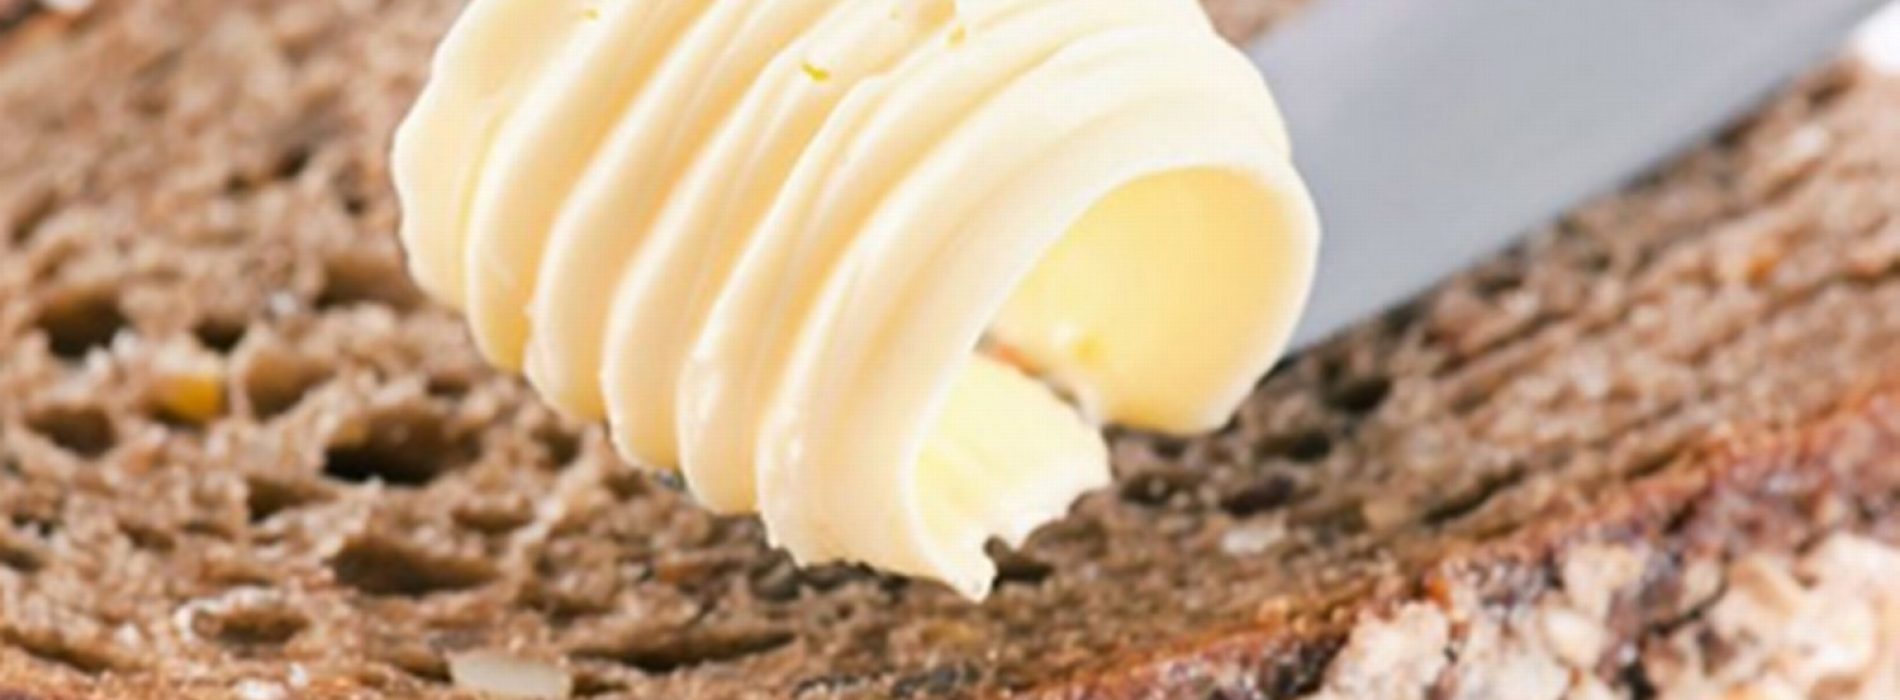 We zijn tientallen jaren misleid: Roomboter is niet schadelijk voor je gezondheid, maar margarine wel